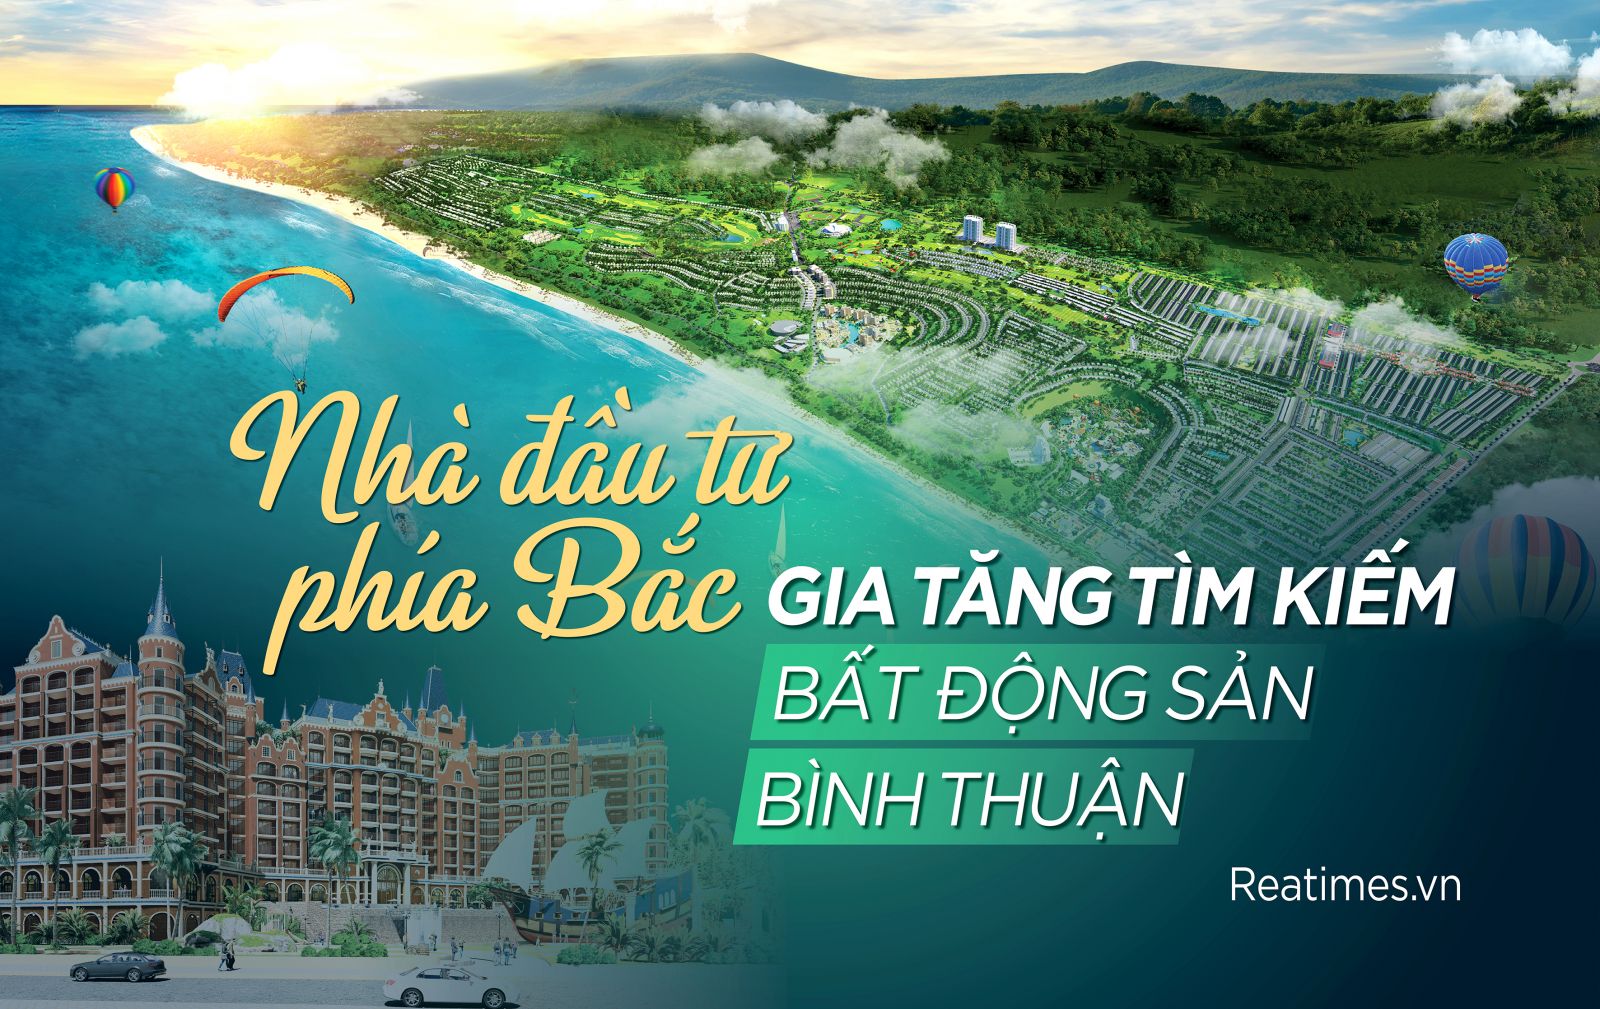 Nhà đầu tư phía Bắc gia tăng tìm kiếm bất động sản Bình Thuận